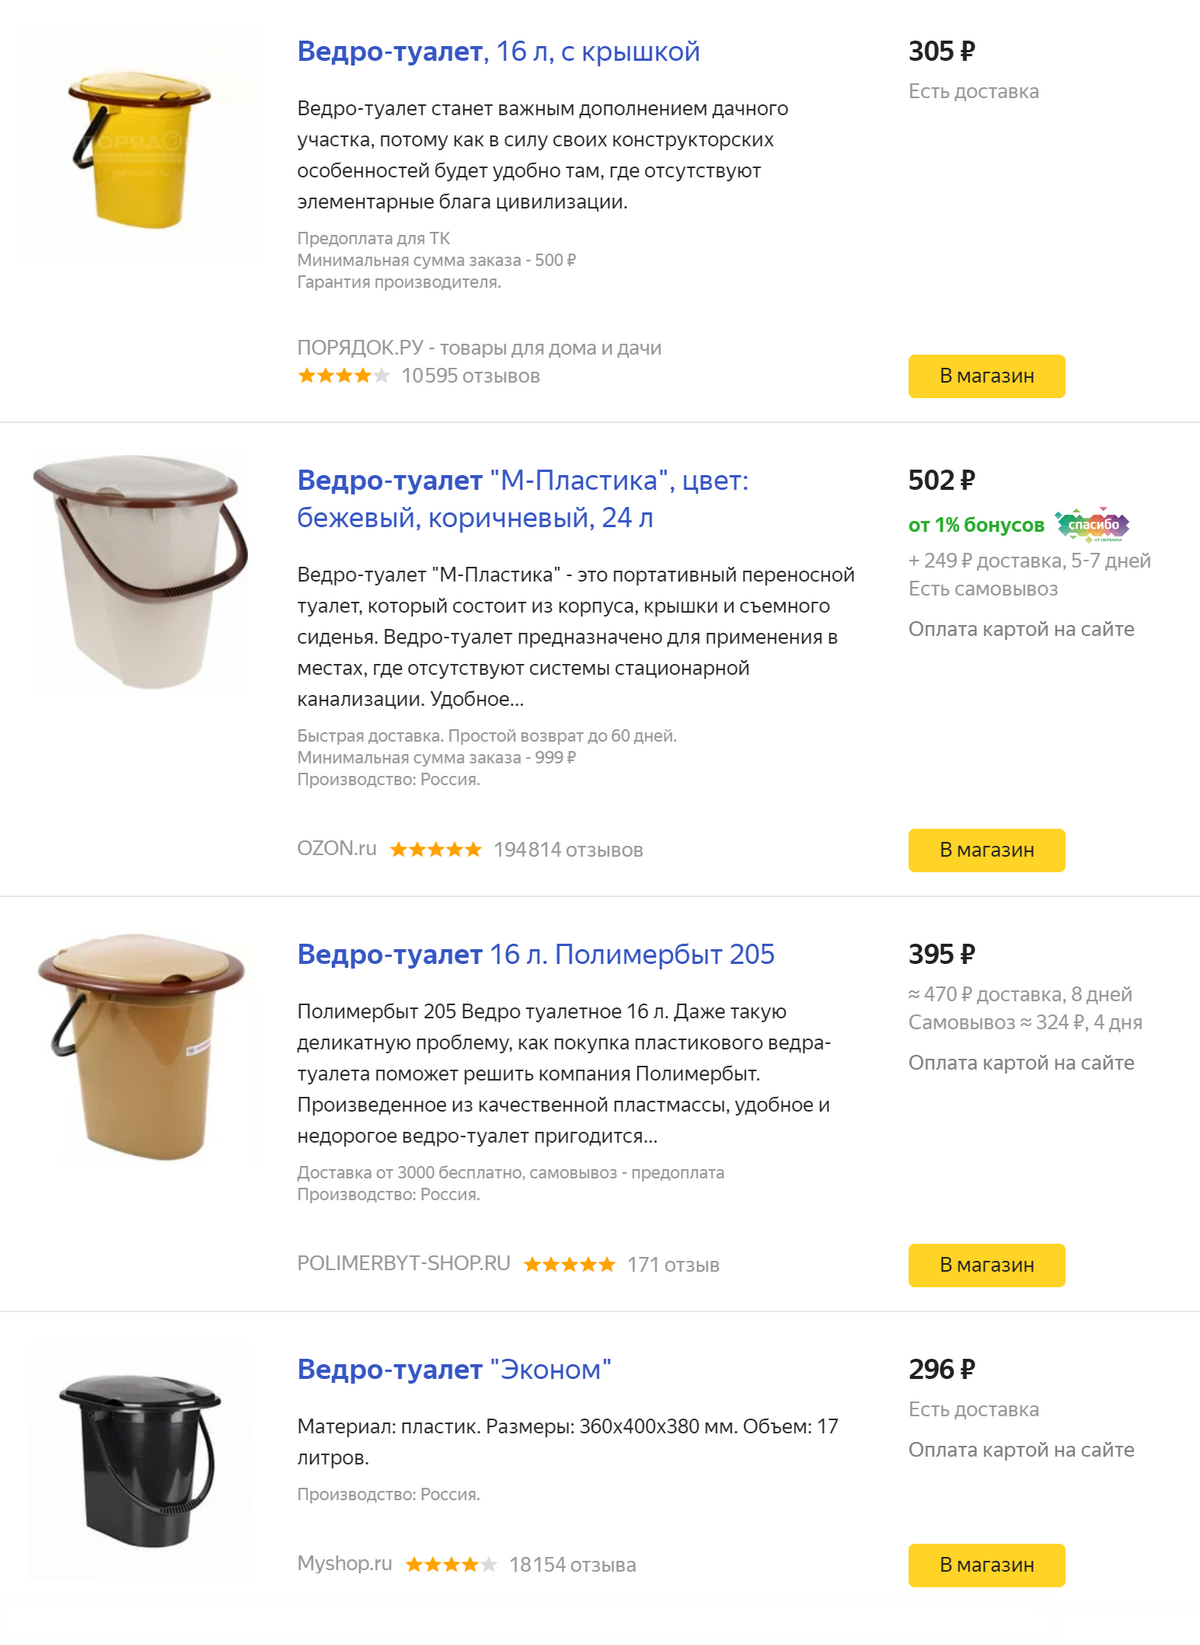 Вот такой разброс цен на&nbsp;ведро-туалет предлагает «Яндекс-маркет». Мы&nbsp;же купили свое в&nbsp;ближайшем магазине, а там что привезли, то&nbsp;и берешь. Никакой проблемы выбора!